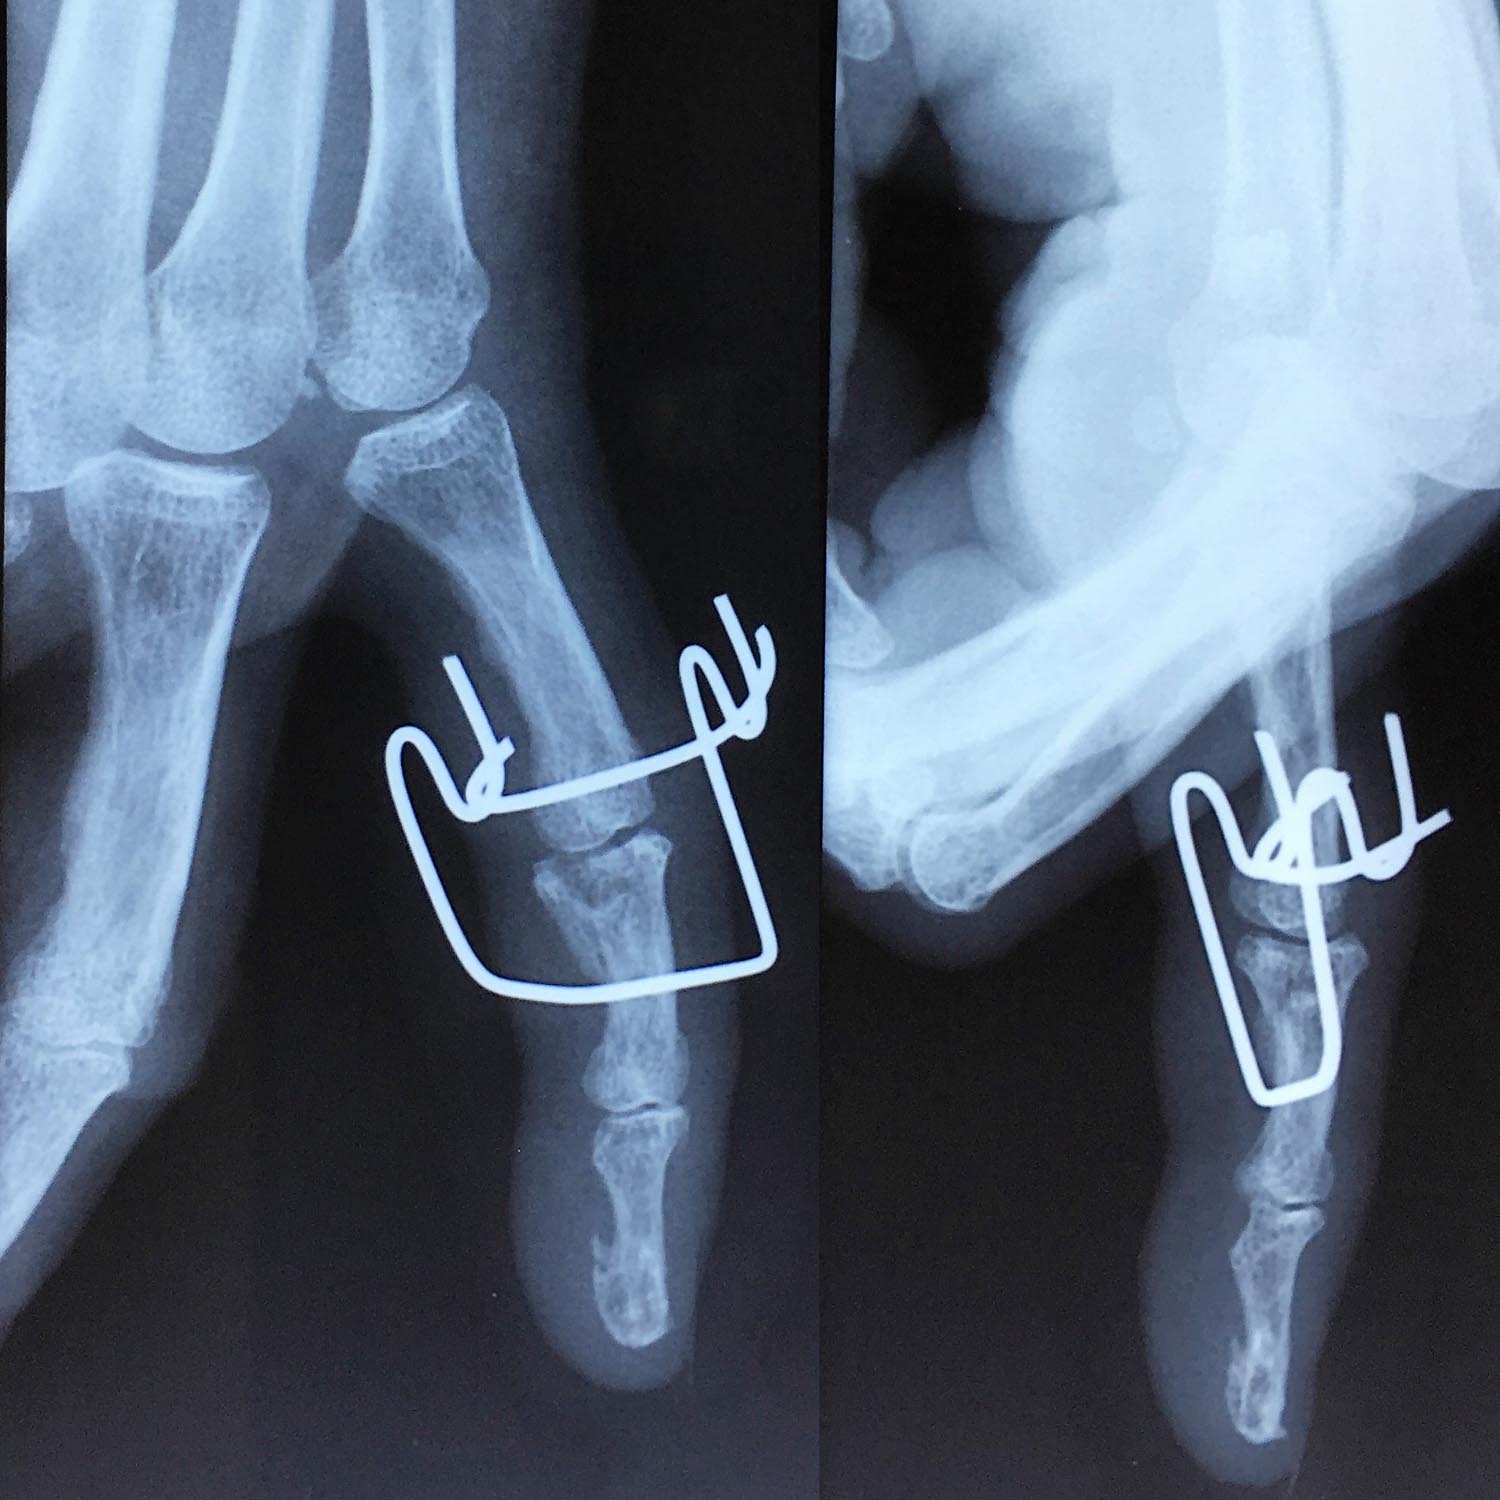 Fractures de la main | L'institut de chirurgie de la main de l ...